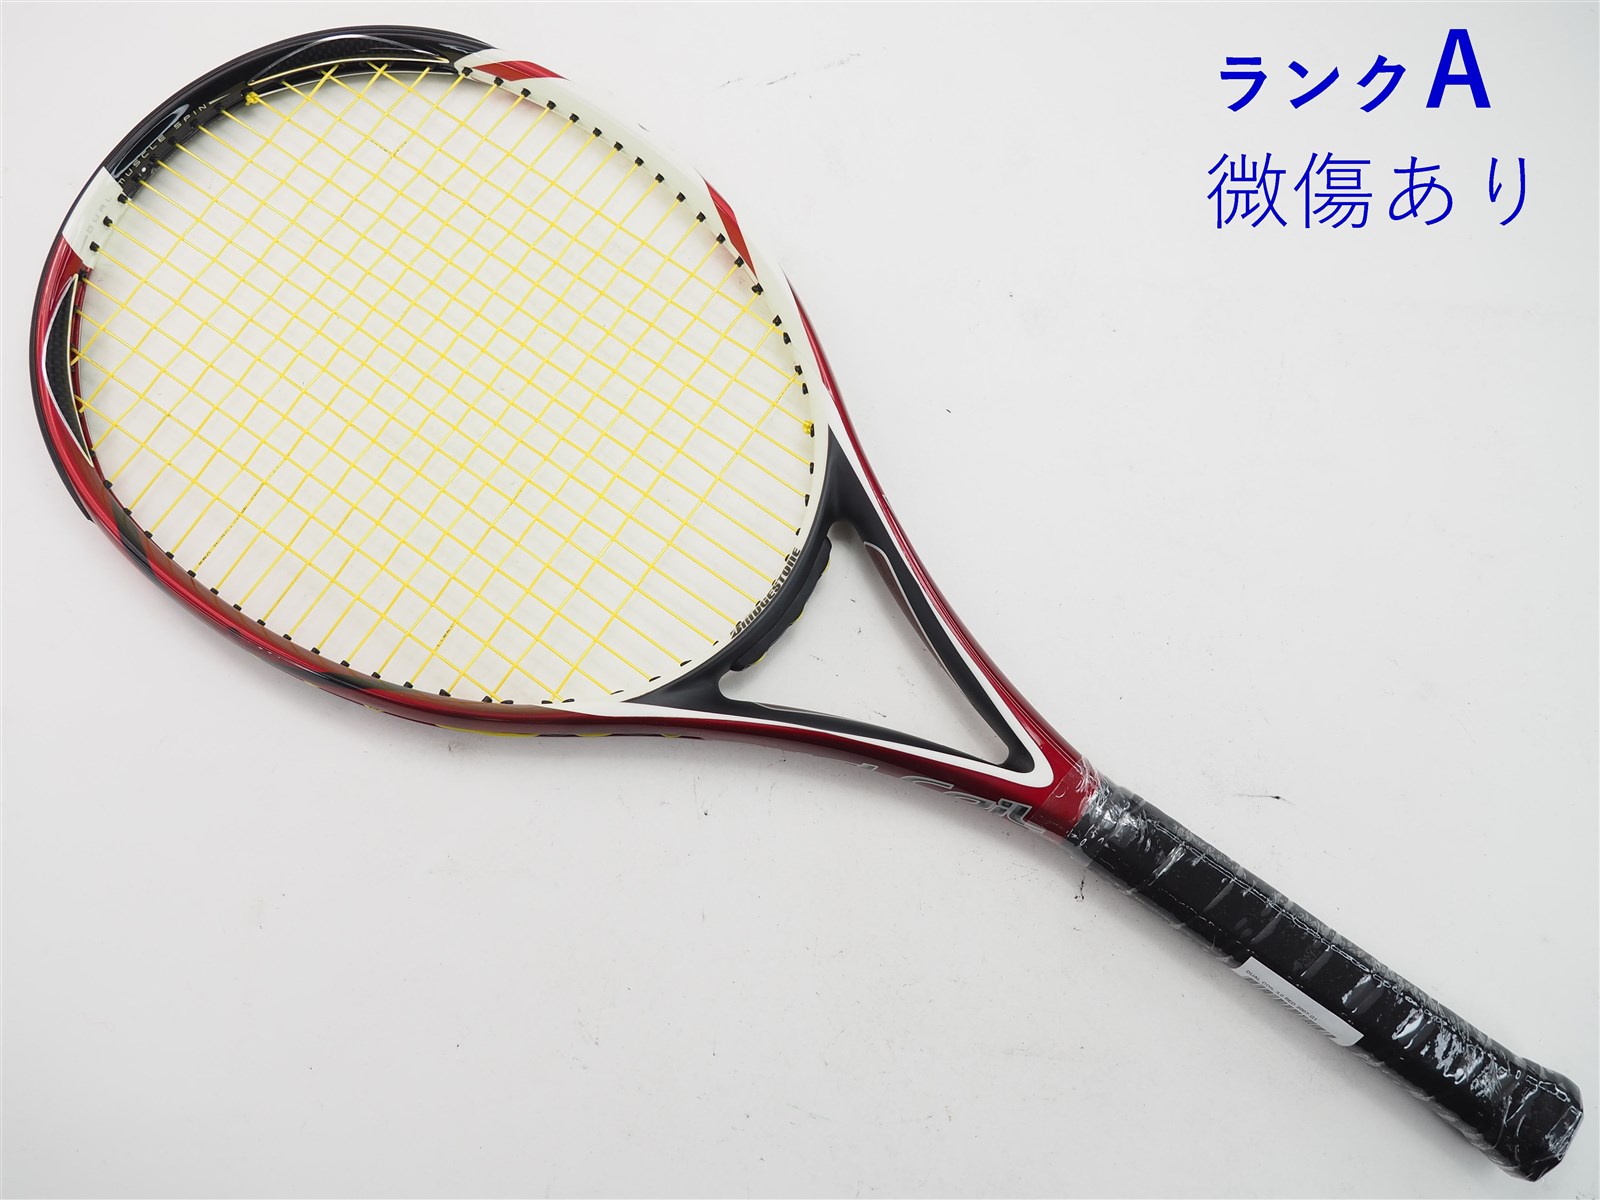 テニスラケット ブリヂストン デュアル コイル 3.0 (G2)BRIDGESTONE DUAL COIL 3.0 - テニス